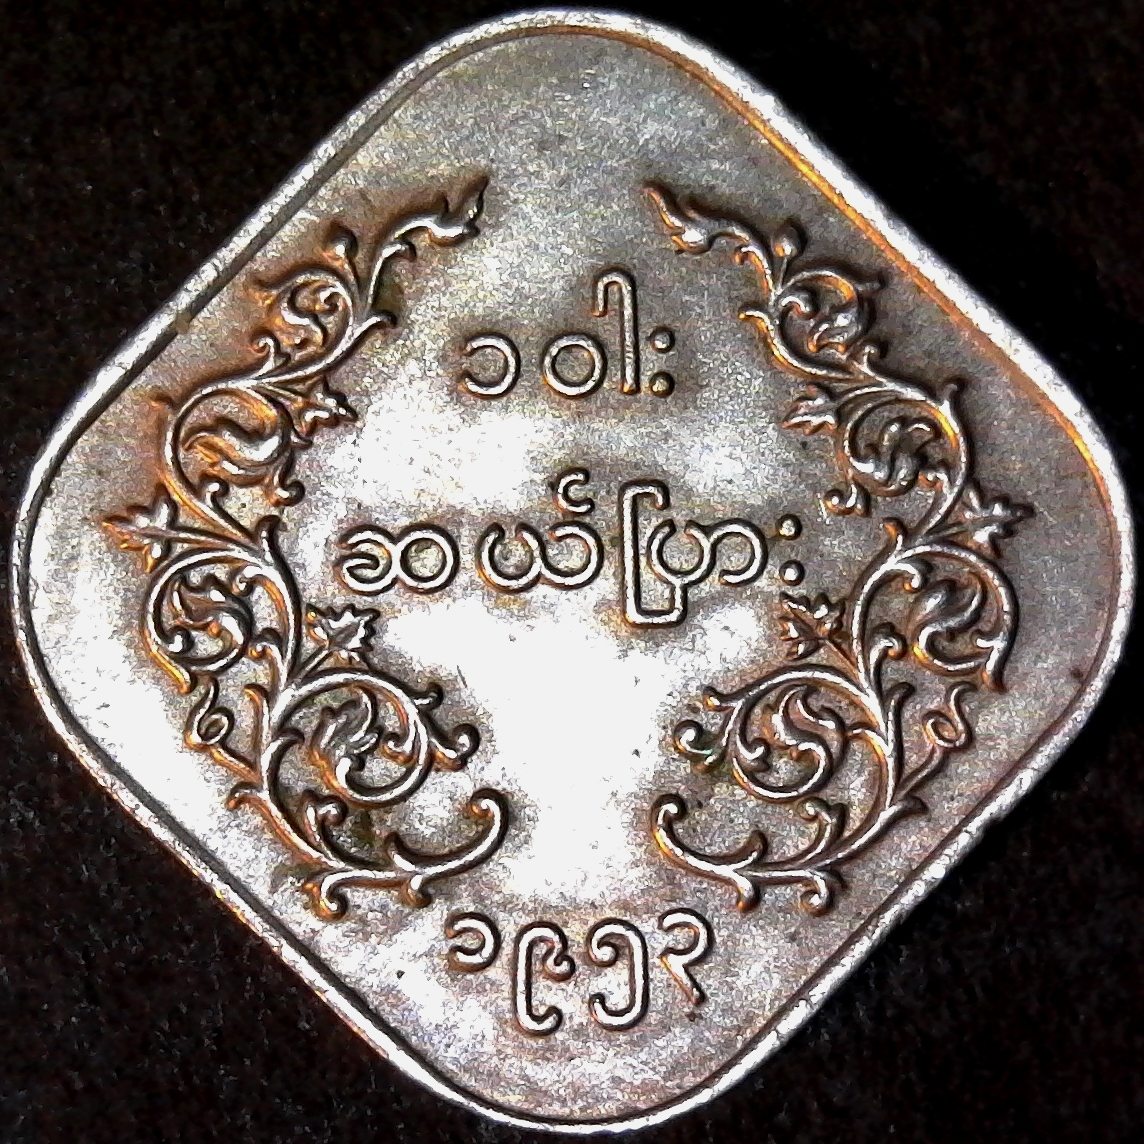 Burma 2 Pyas 1953 rev less 5.jpg